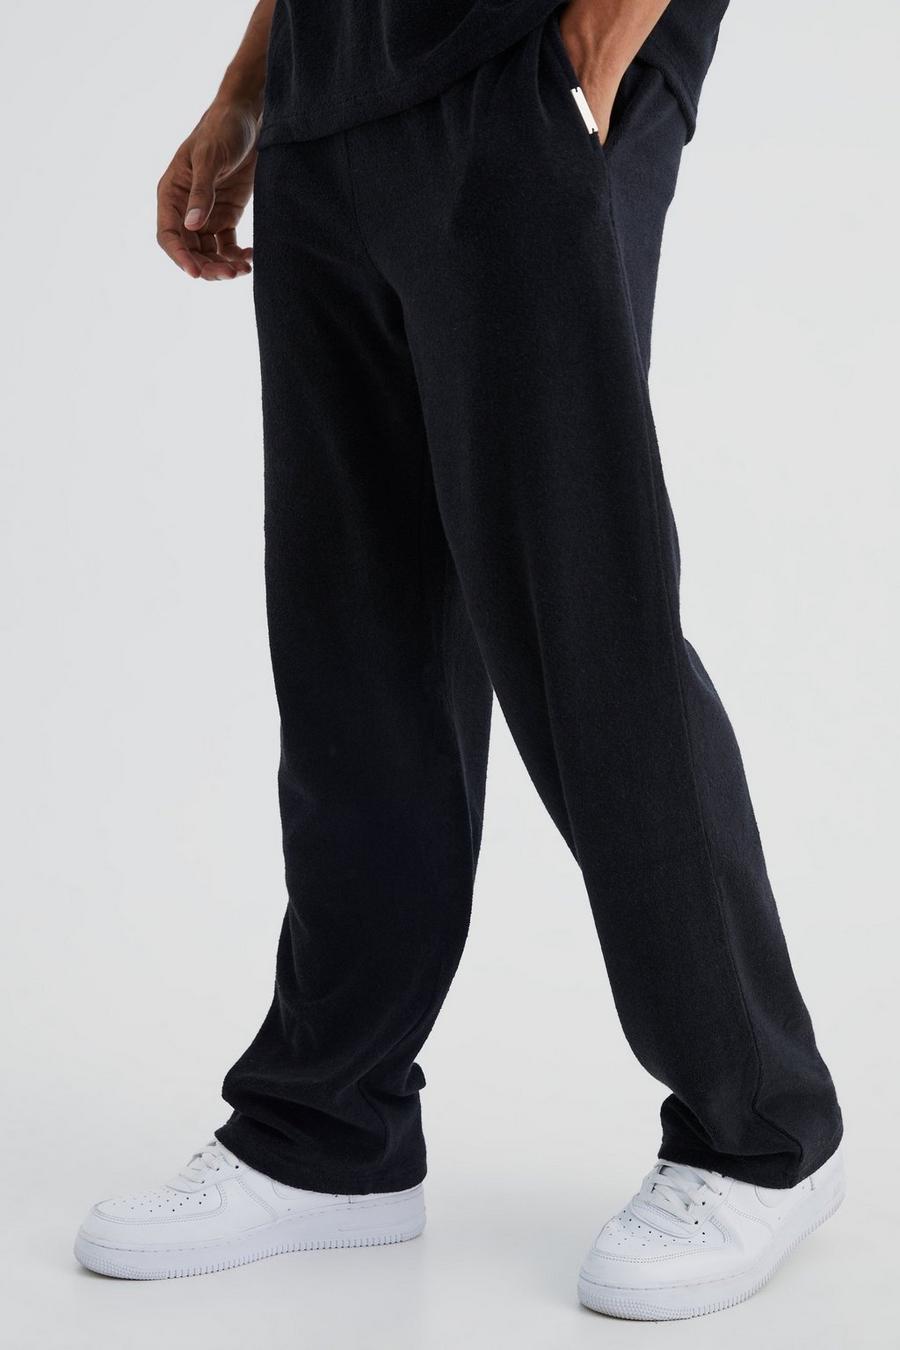 Pantalón deportivo holgado de felpa Premium, Black